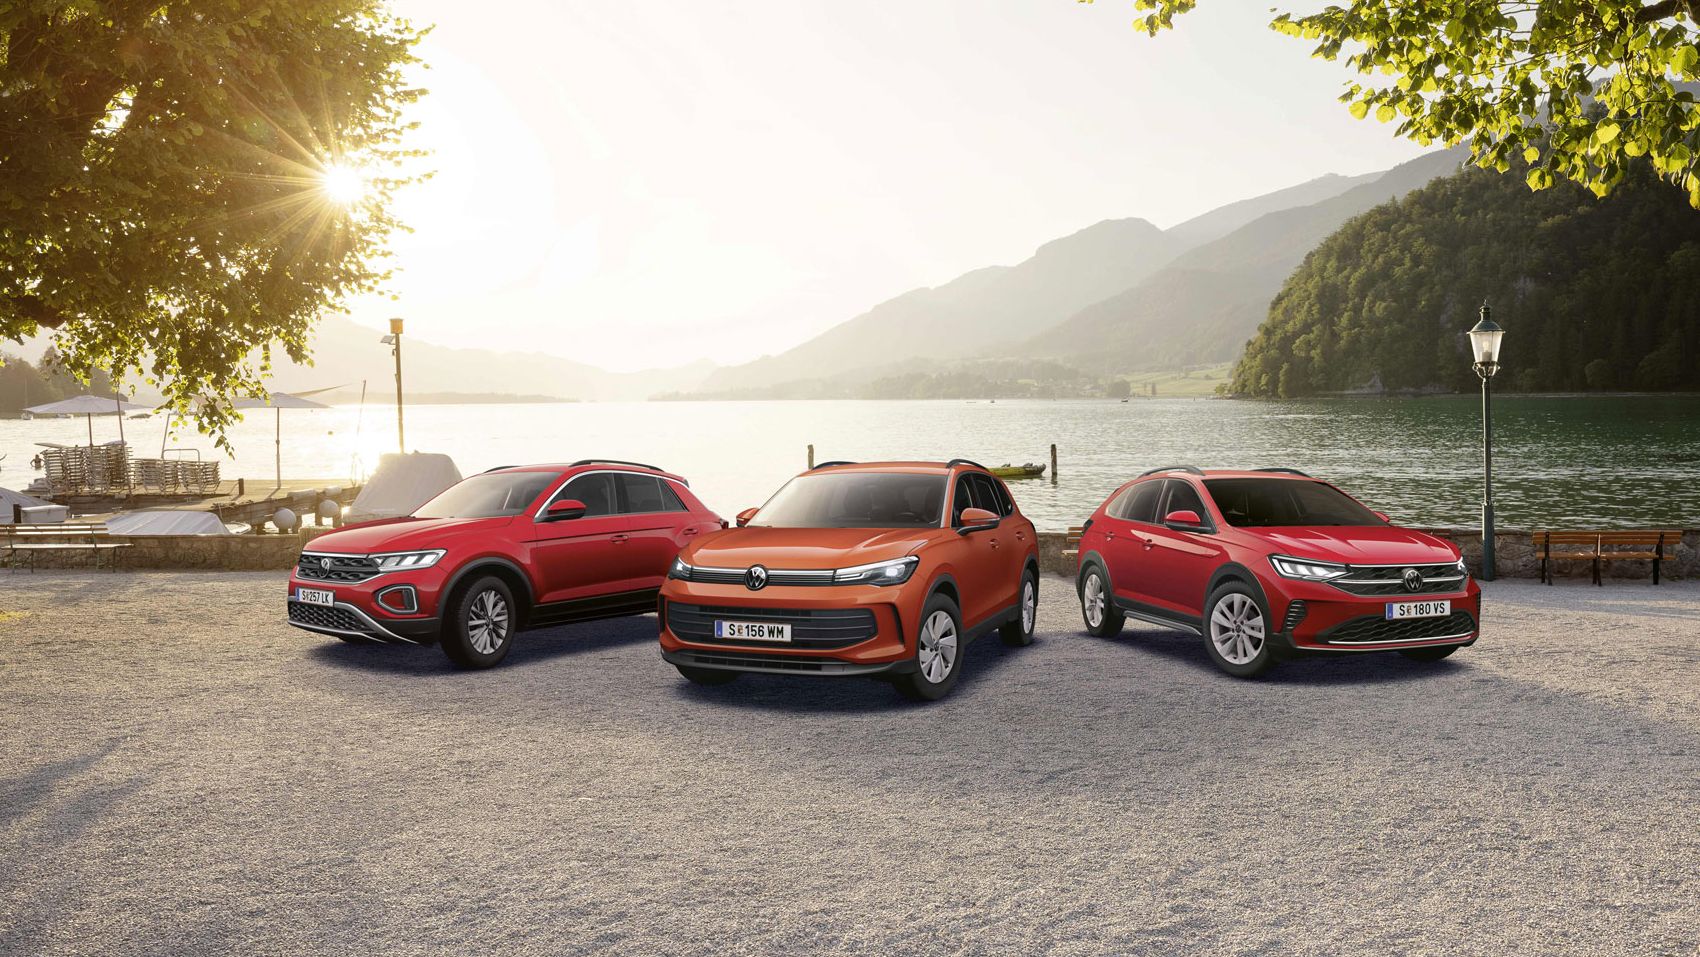 Die Volkswagen Friends Sondermodelle stehen geparkt vor den Wolfgangsee